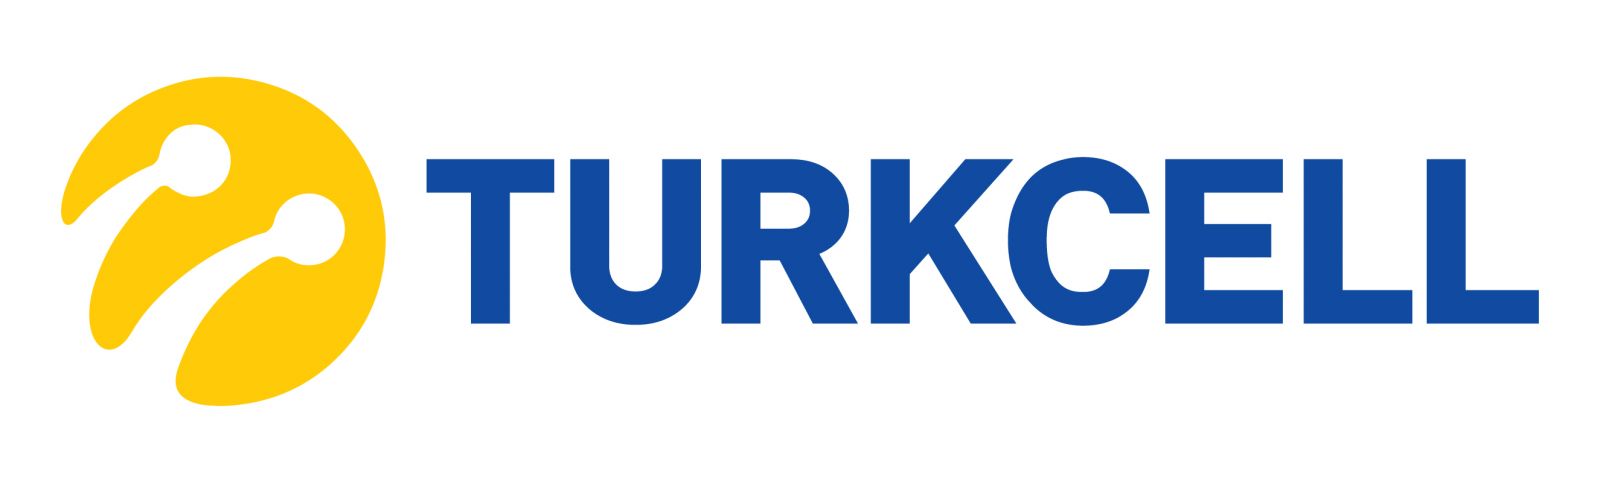 Turkcell Yan yana logo